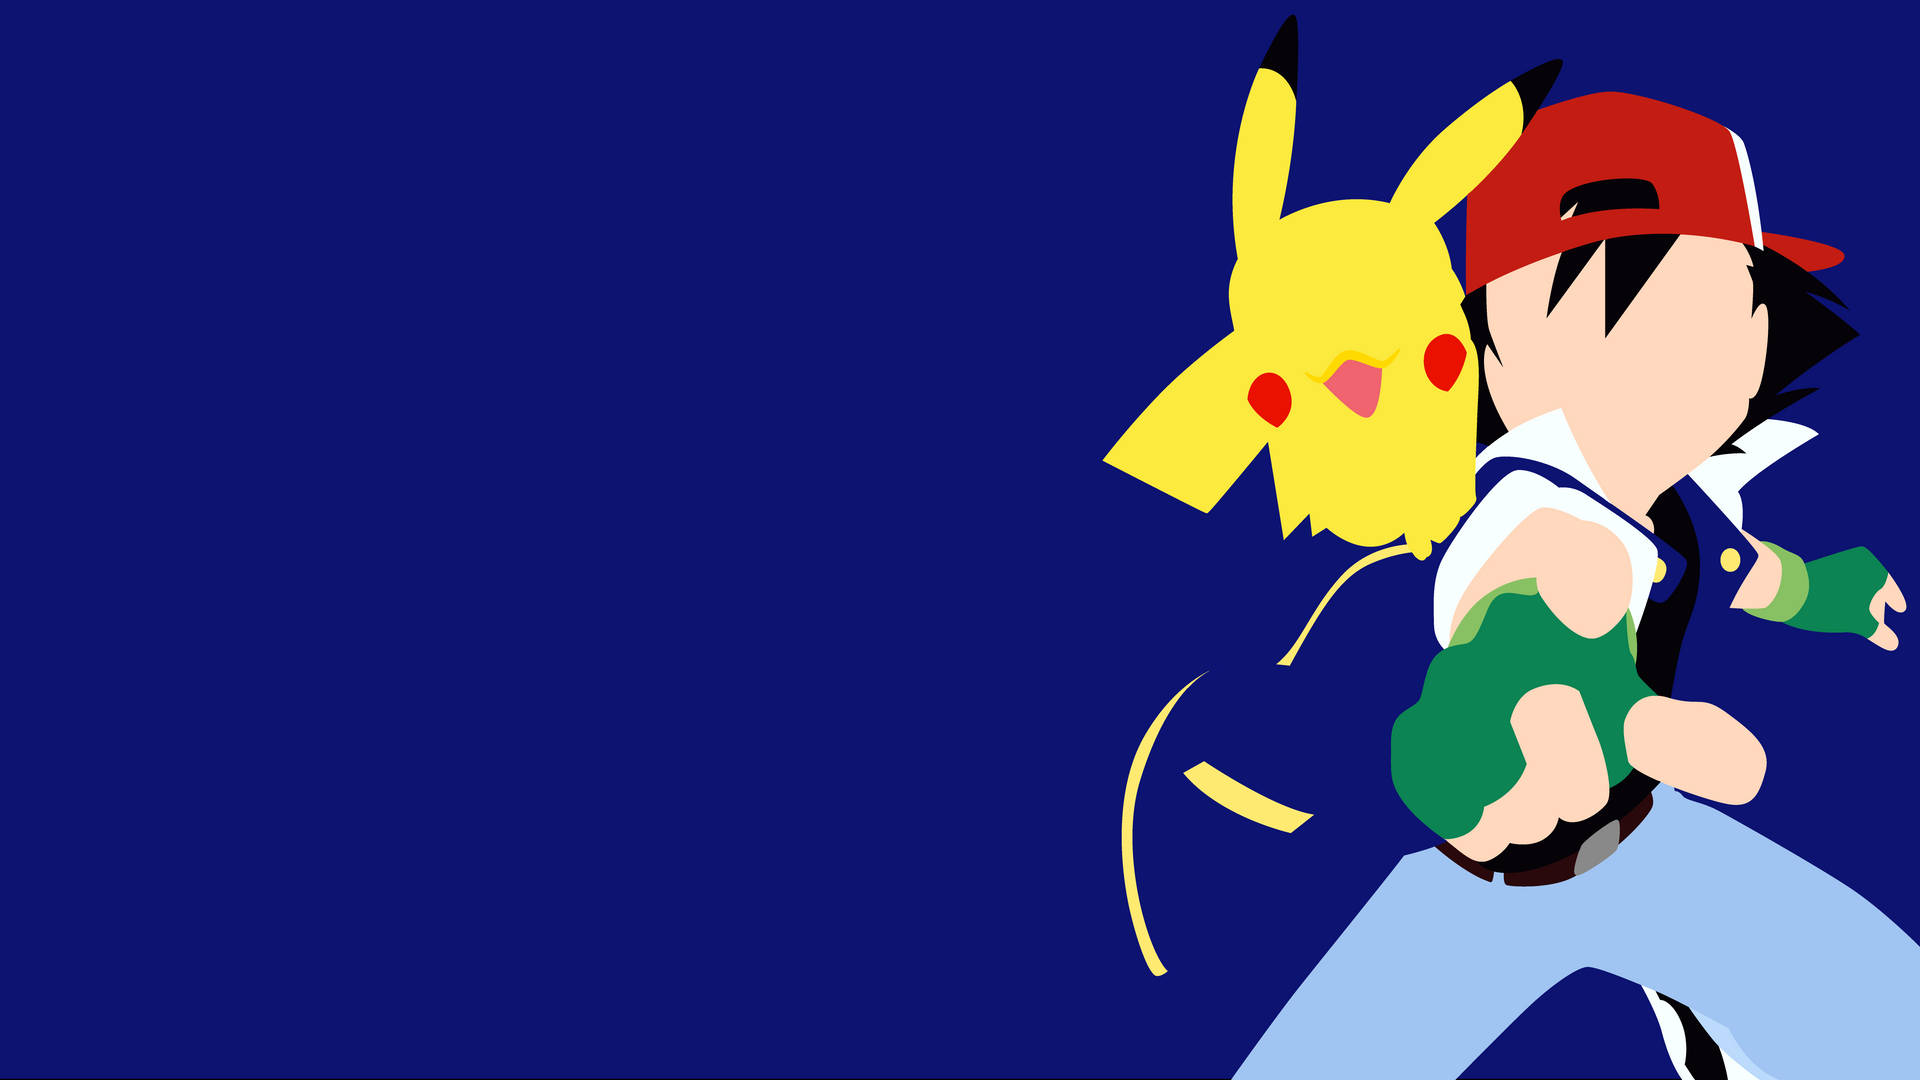 Pikachu 4k And Ash Blue Vector Art Wallpaper